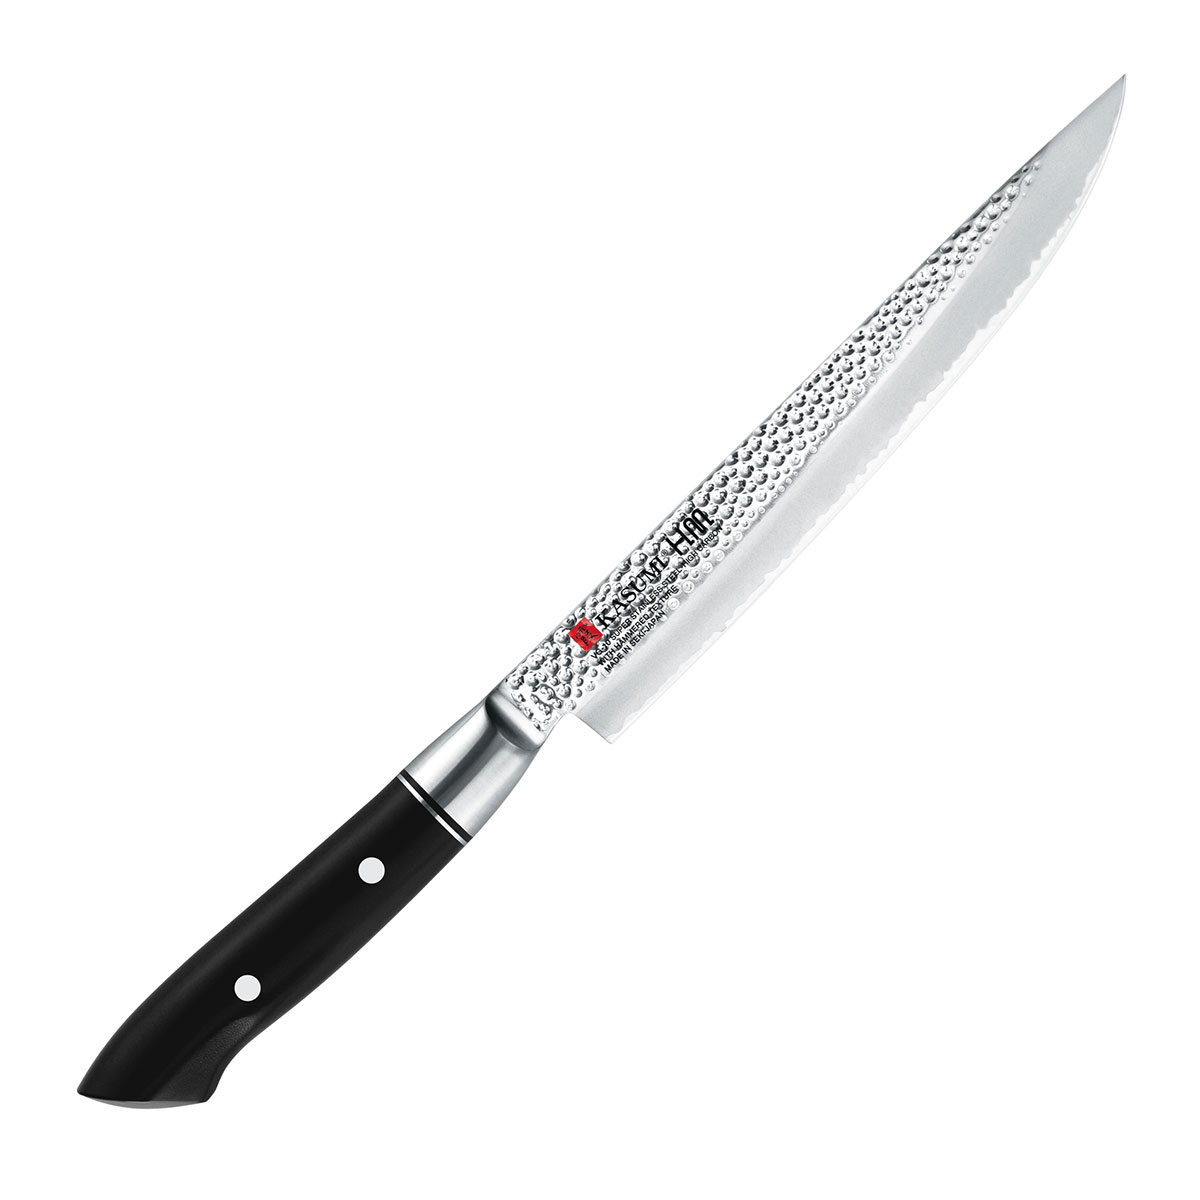 Нож кухонный разделочный 20 см